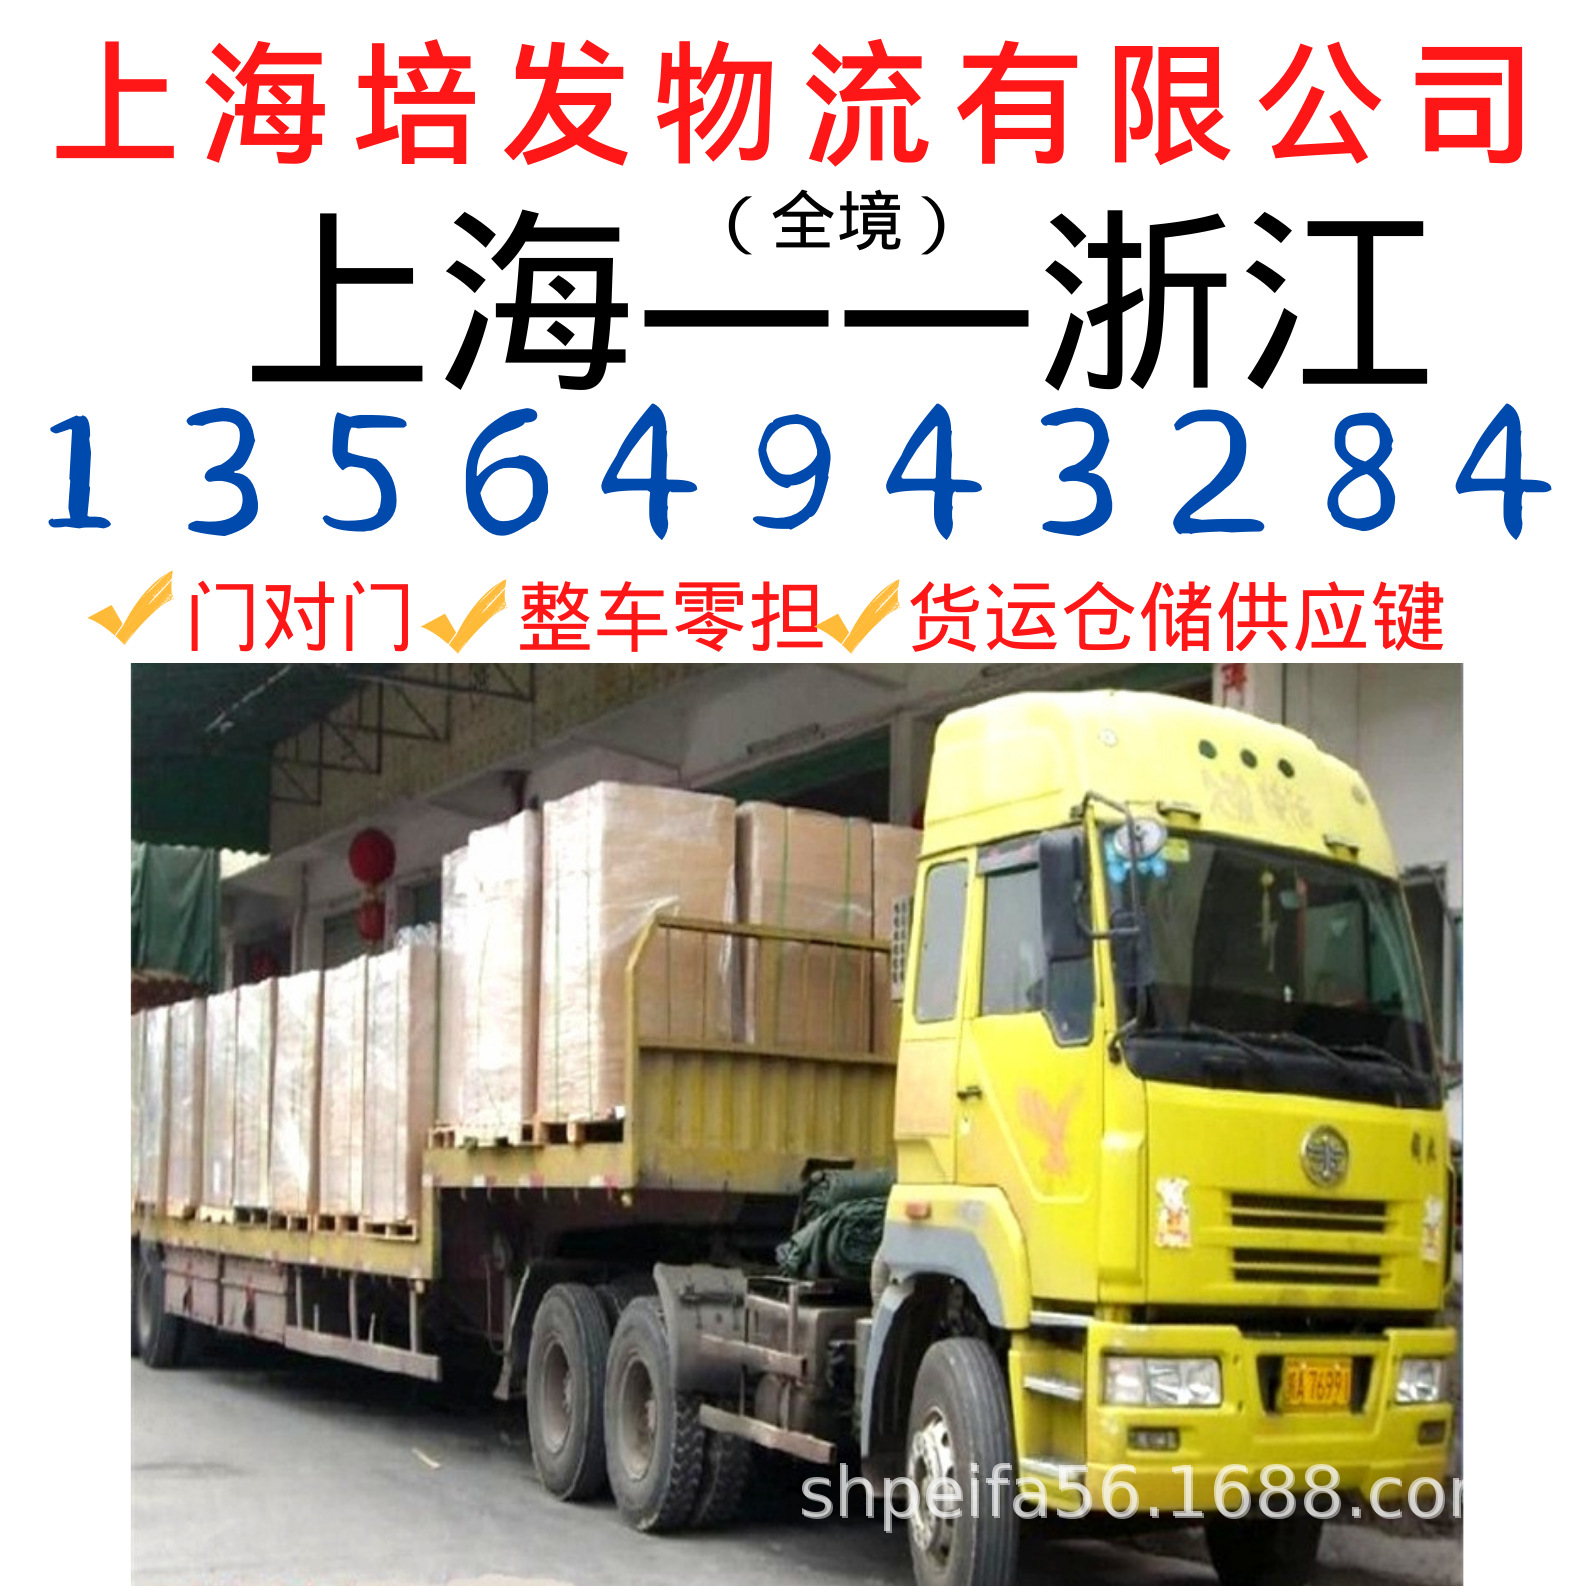 上海到至金华的物流运输车队、回程车、返程车、货运代理公司